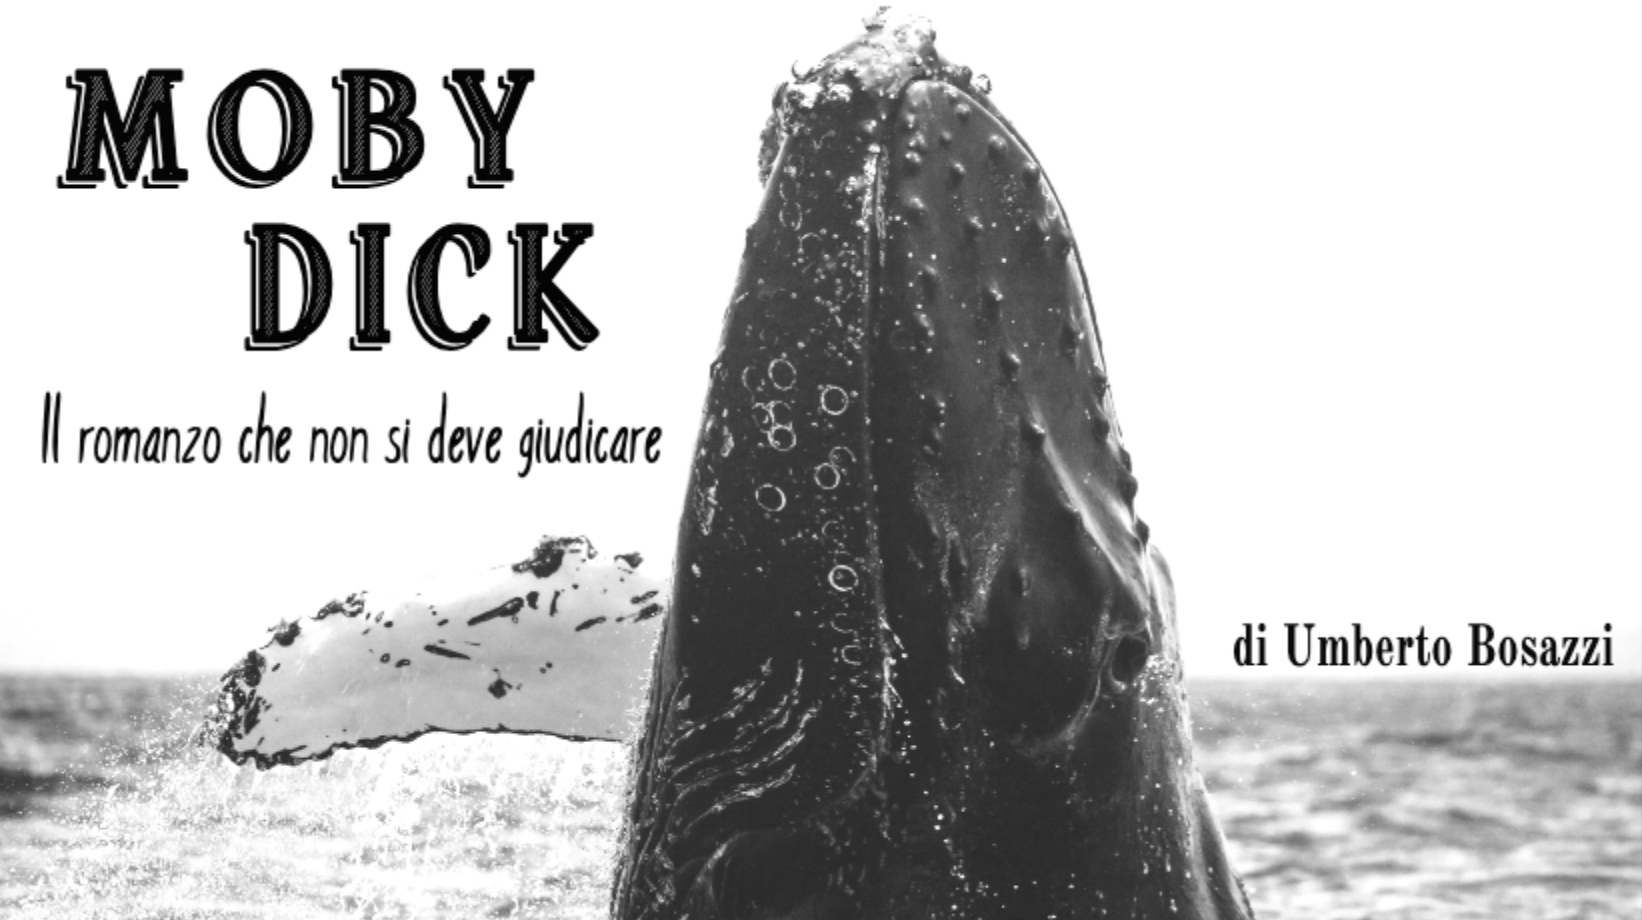 Al momento stai visualizzando “Moby Dick” il romanzo che non si deve giudicare